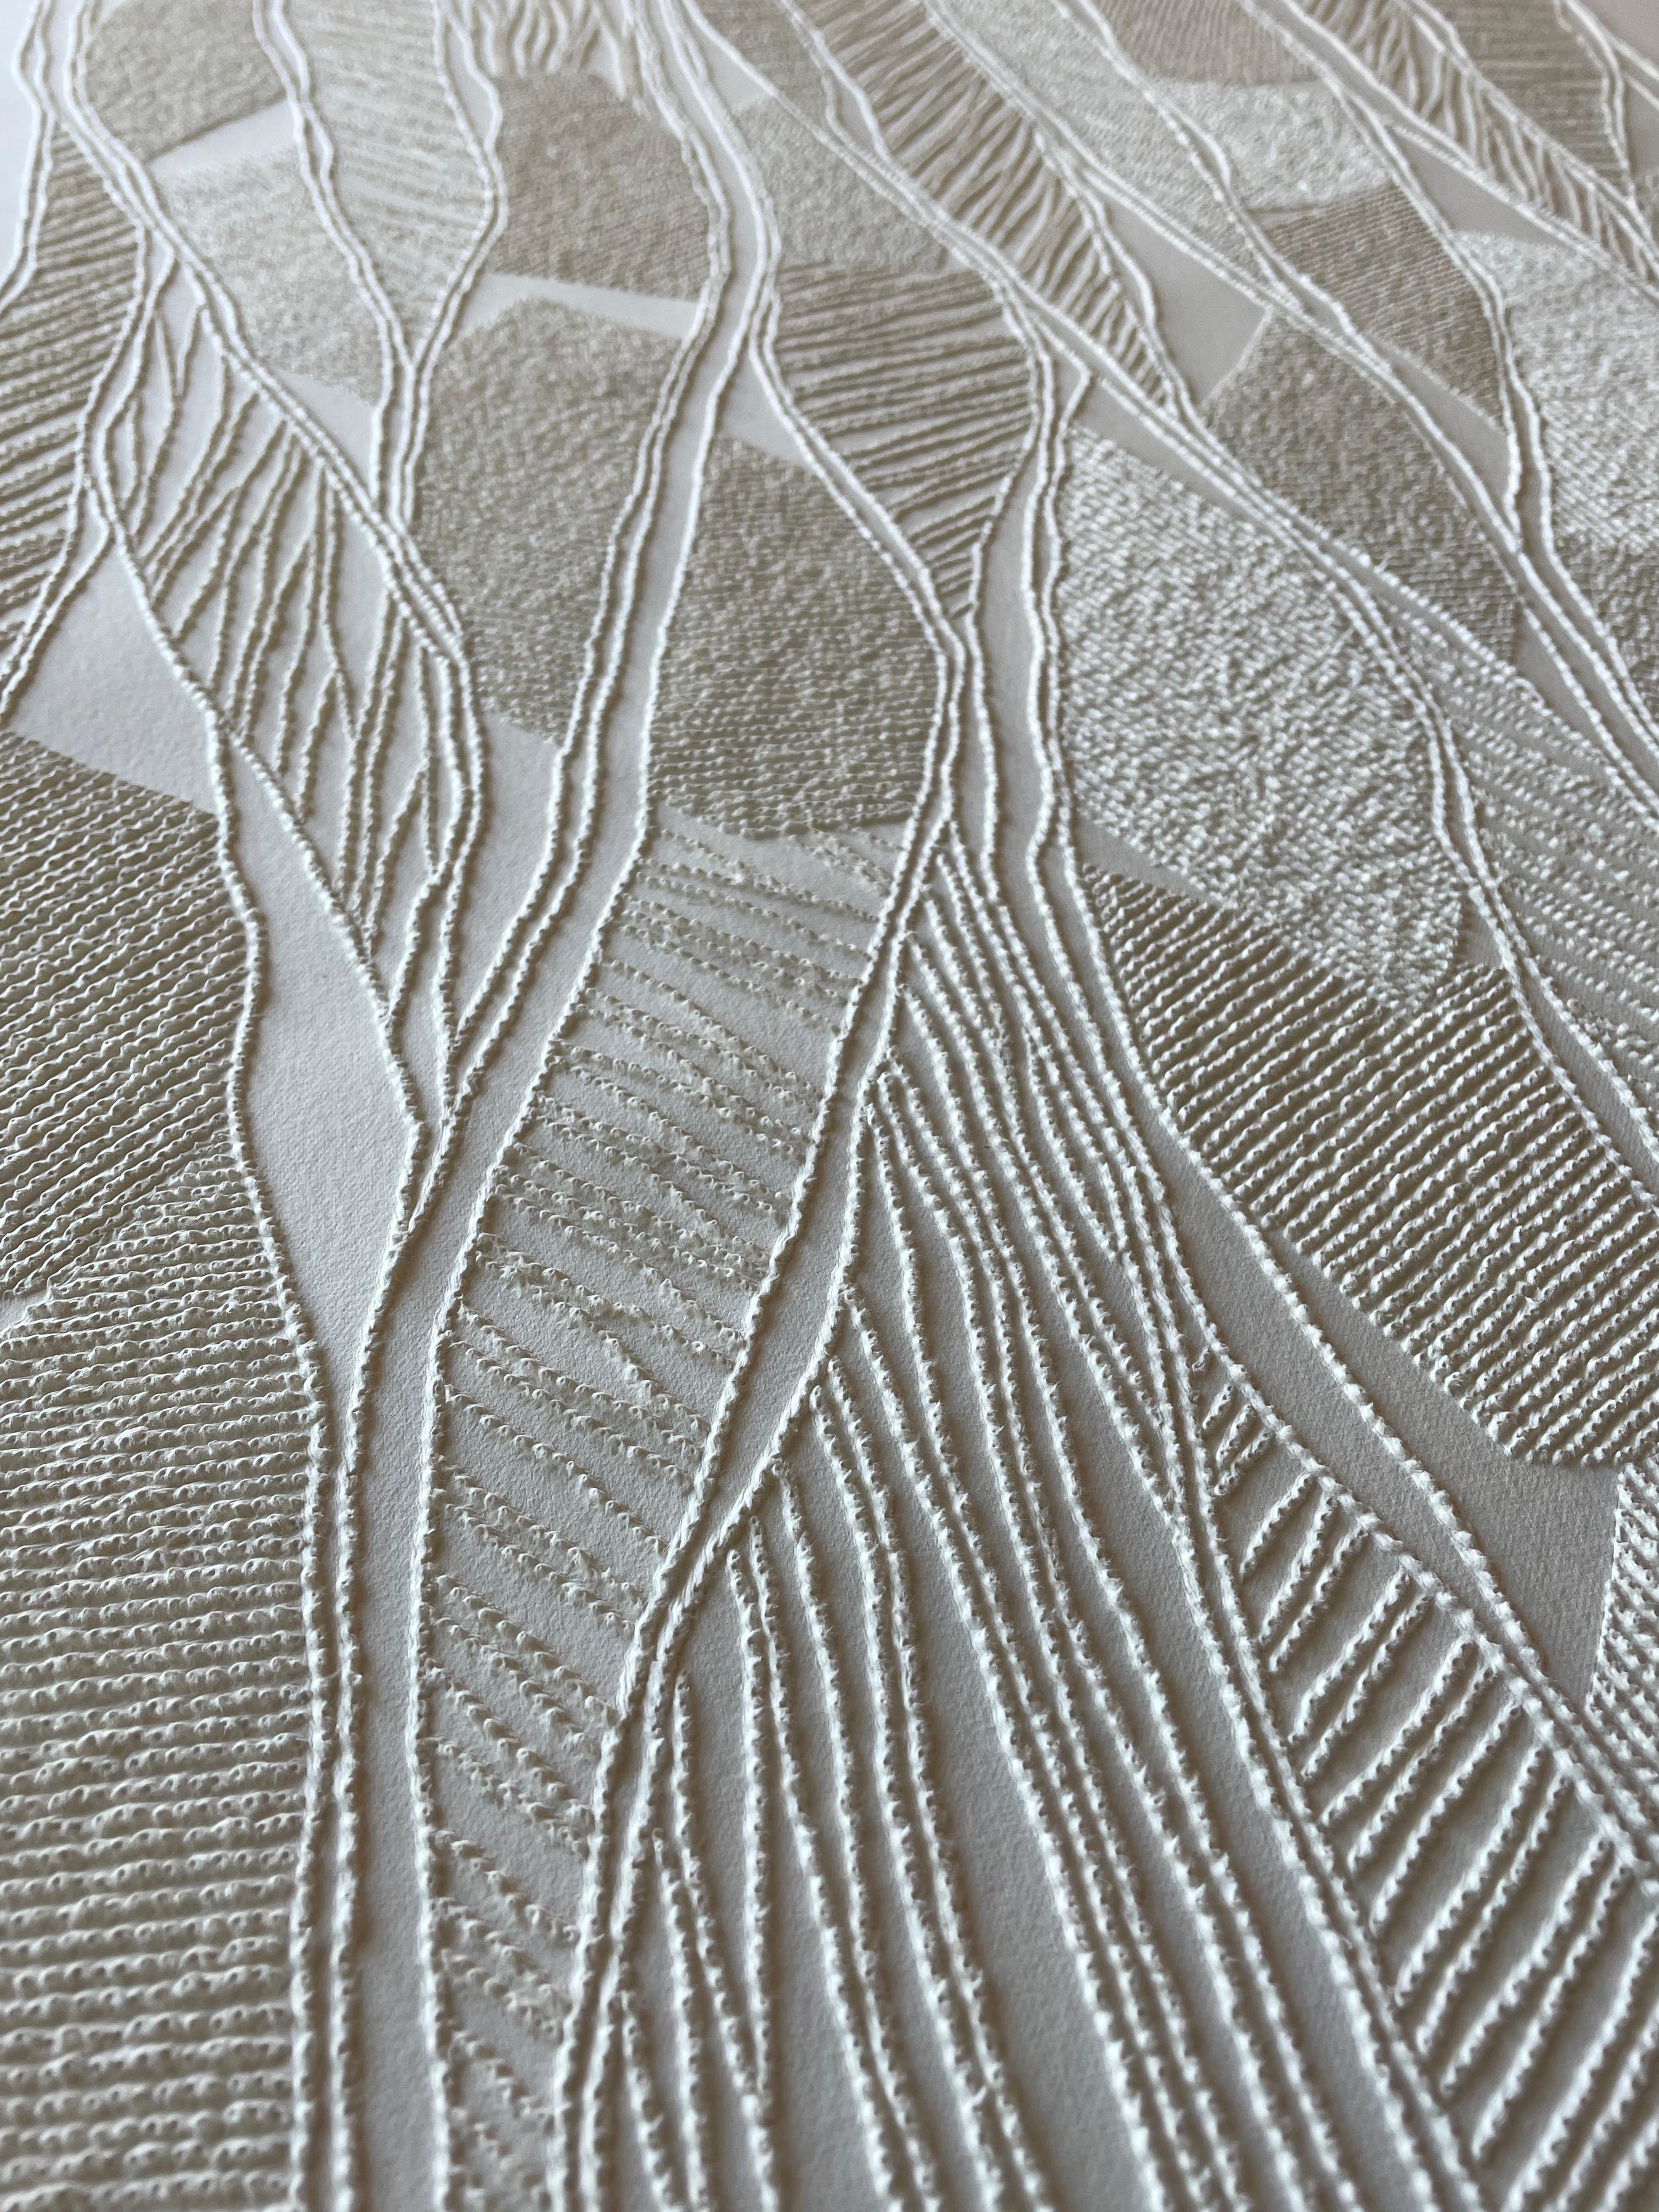 #2 – aufwändige beige 3D-Abstrakte Luftbildzeichnung mit gegezogenen Papierfasern – Sculpture von Antonin Anzil